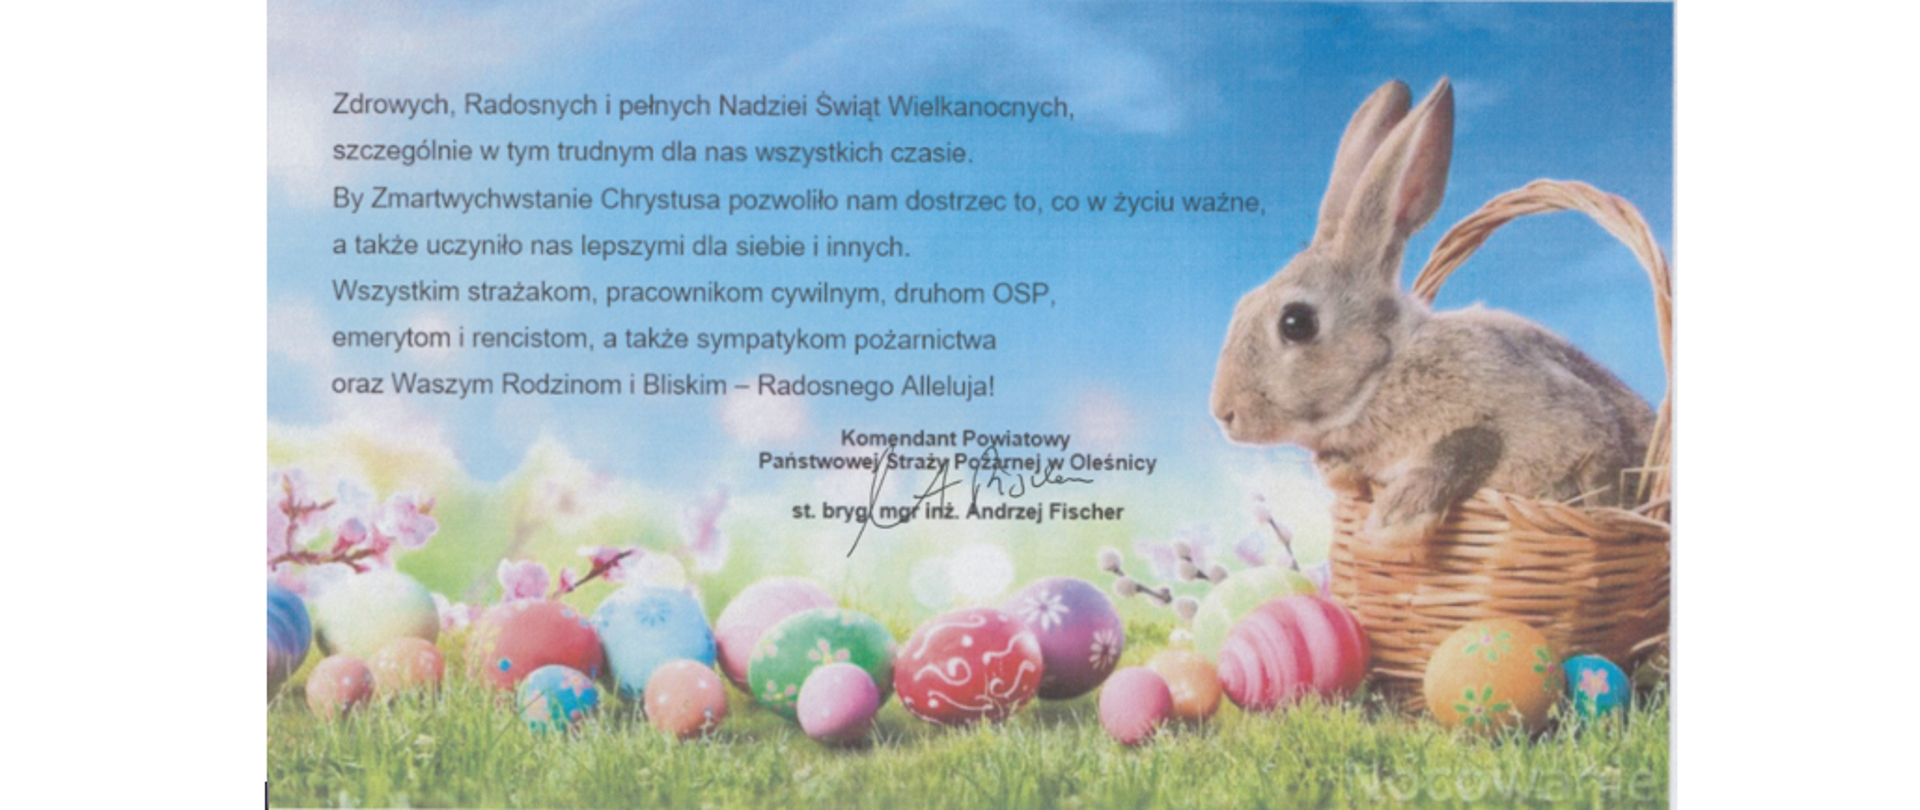 Życzenia Wielkanocne Komendanta Powiatowego PSP w Oleśnicy.